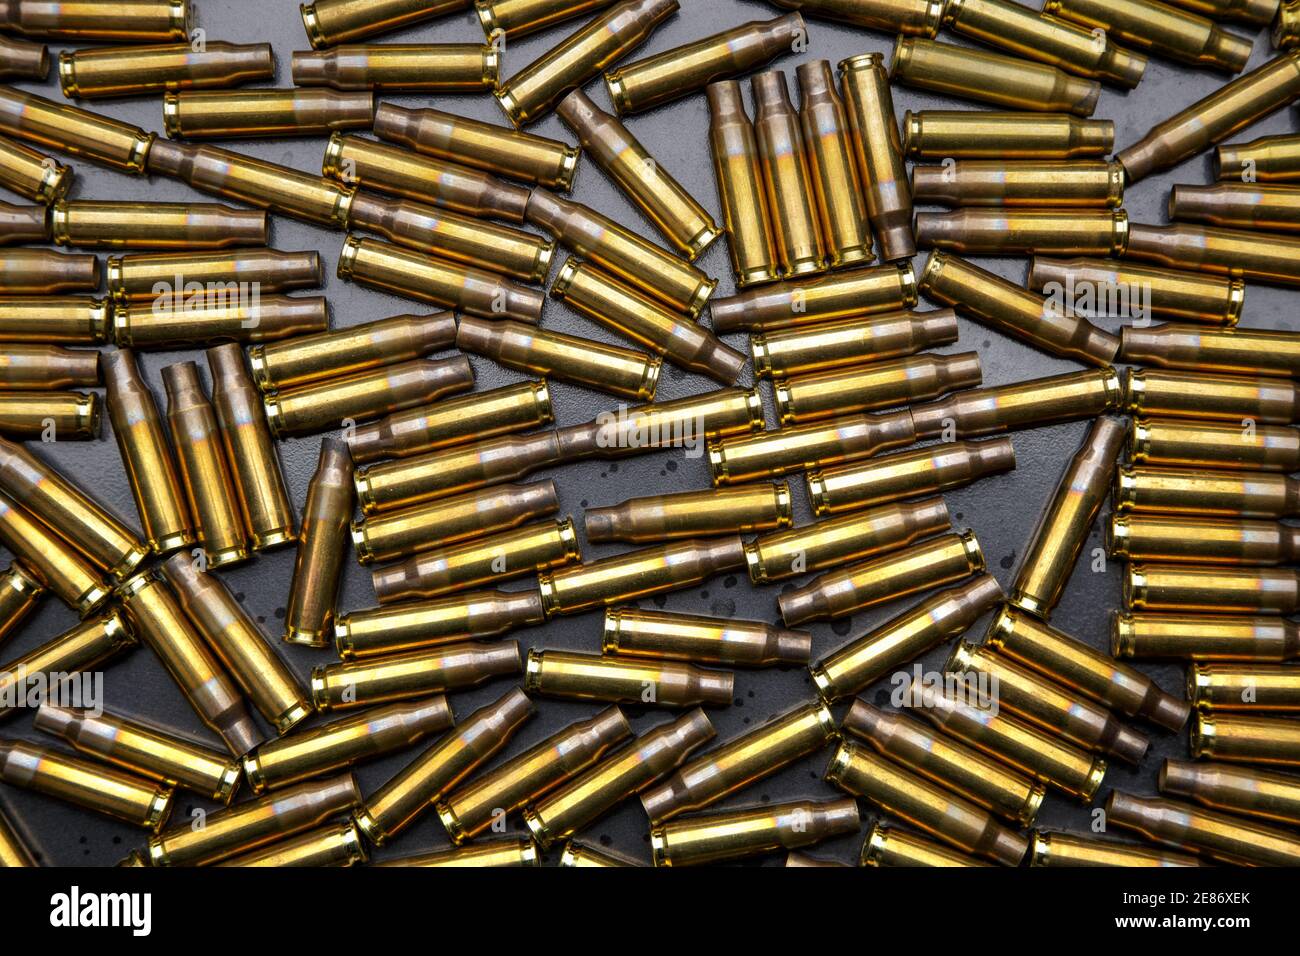 Hintergrund von leeren gebrauchten Munitionskoffern. Militärischer Hintergrund für Poster oder Postkarte. Stockfoto